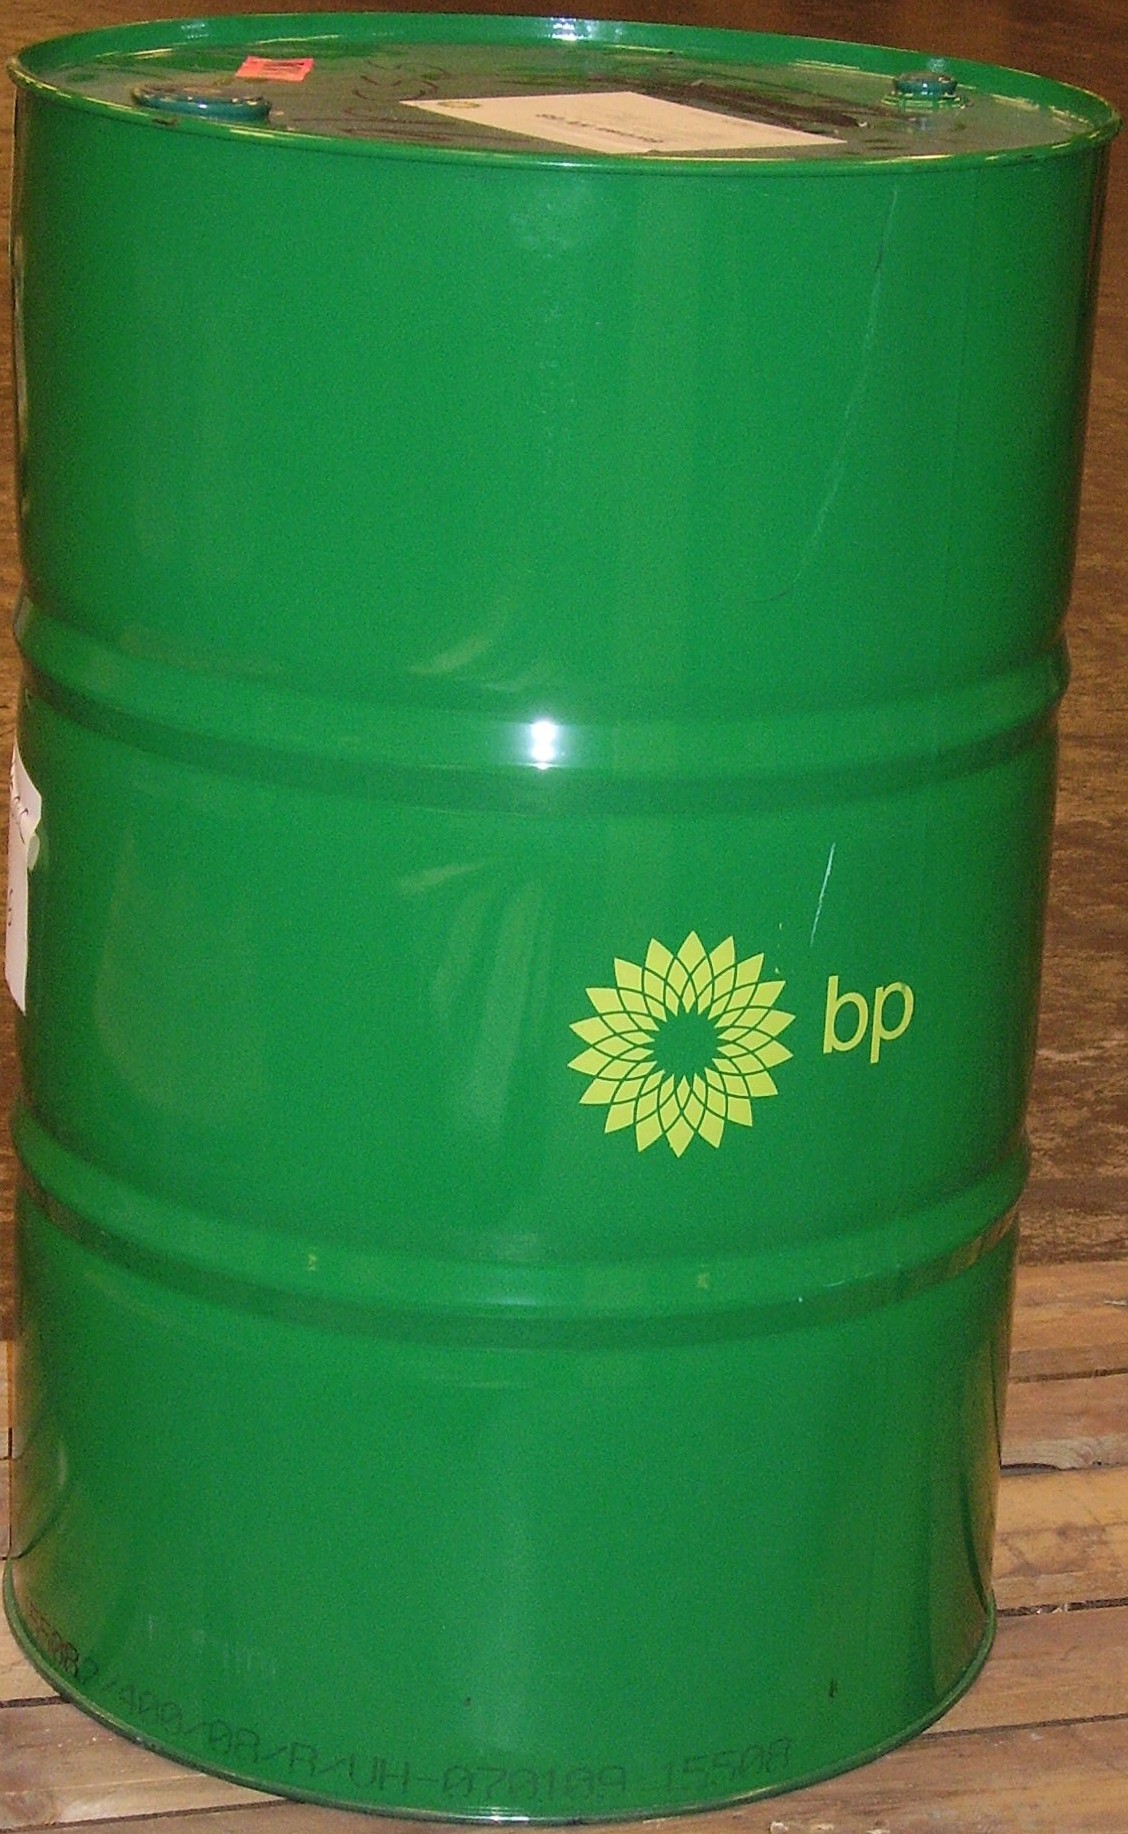 BP Energol GR-XP 220 208l.